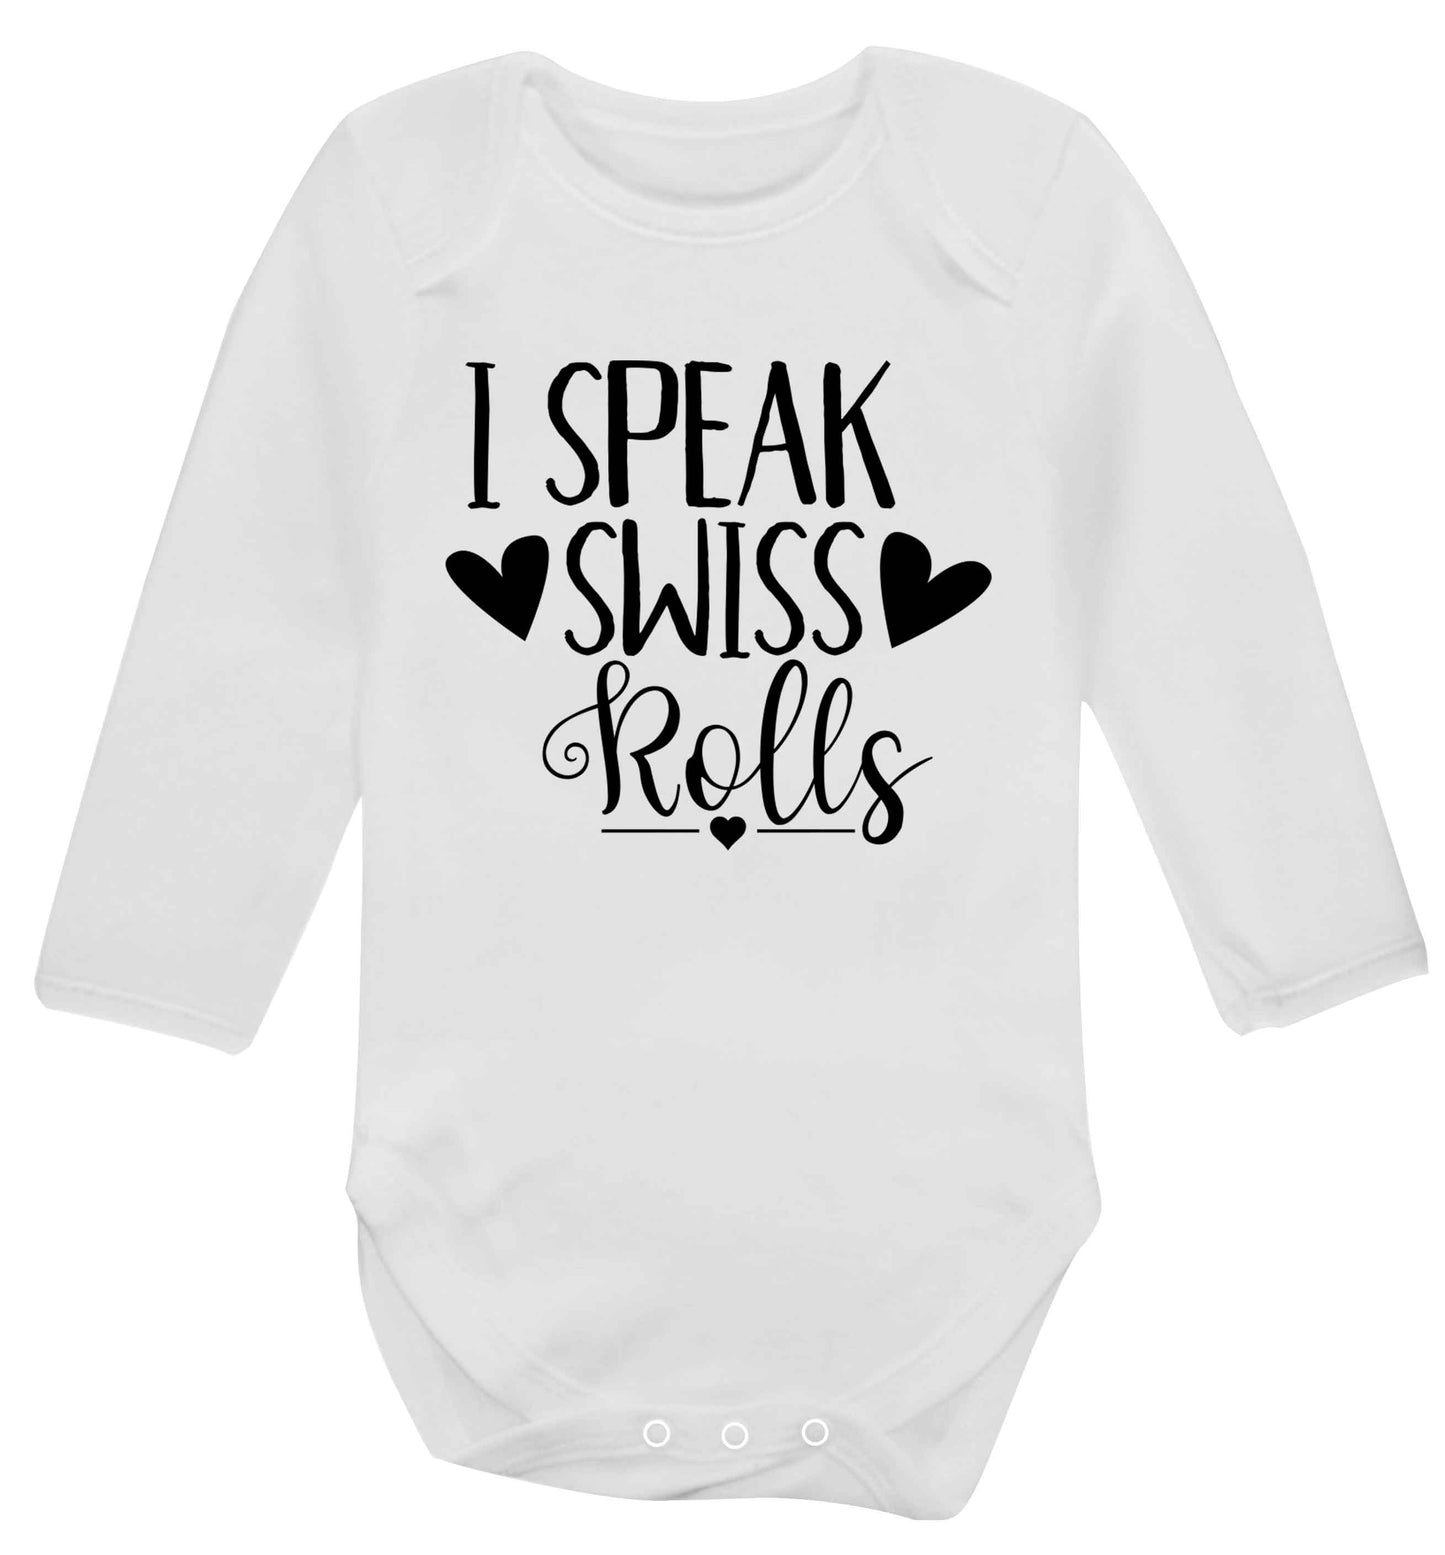 I speak swiss..rolls Baby Vest long sleeved white 6-12 months